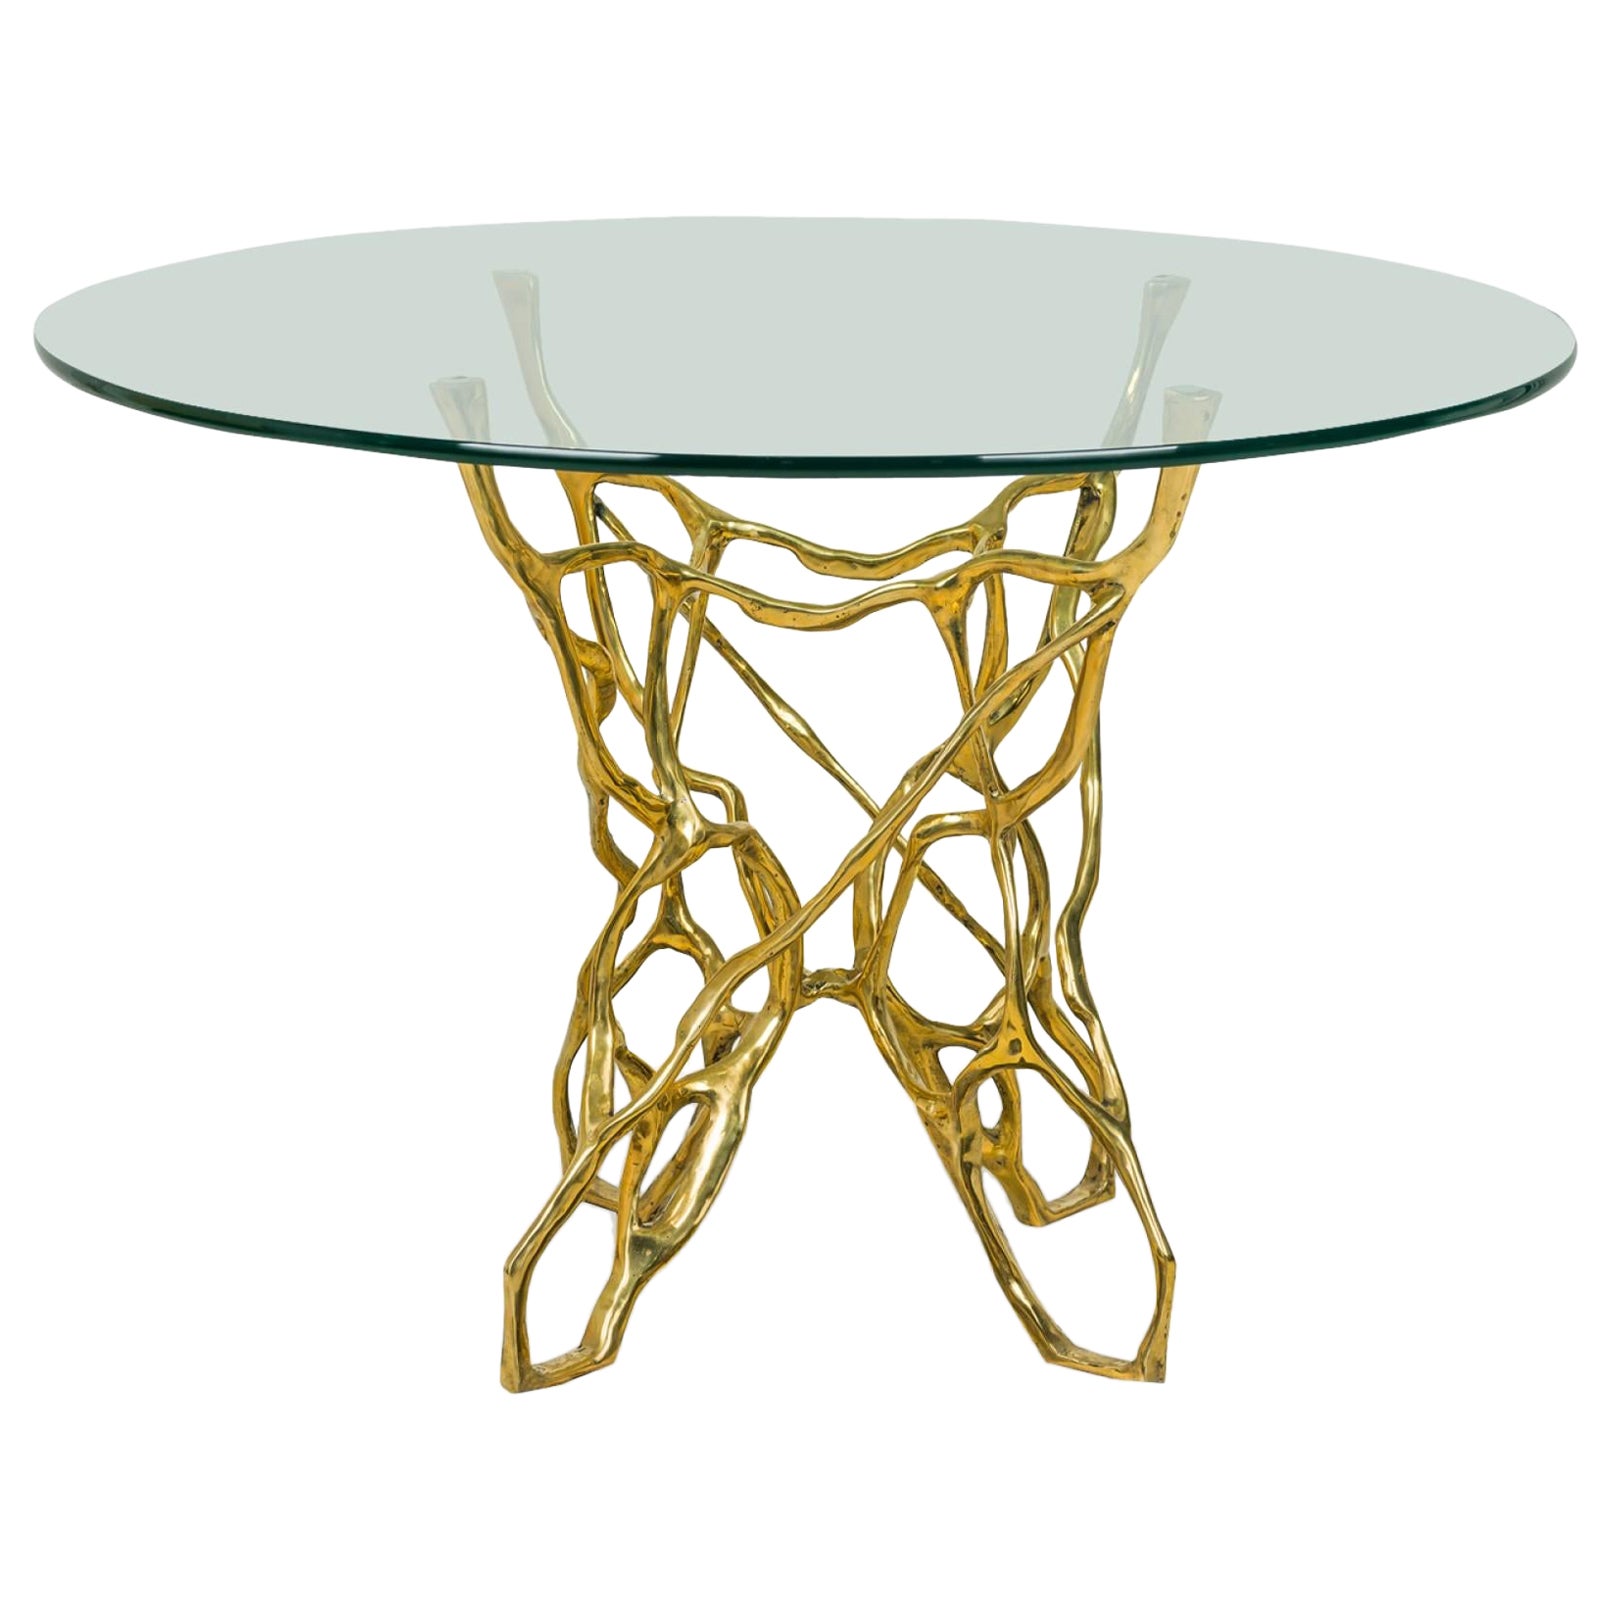 Table de salle à manger biomorphique en bronze de style américain Catarina avec plateau en verre circulaire